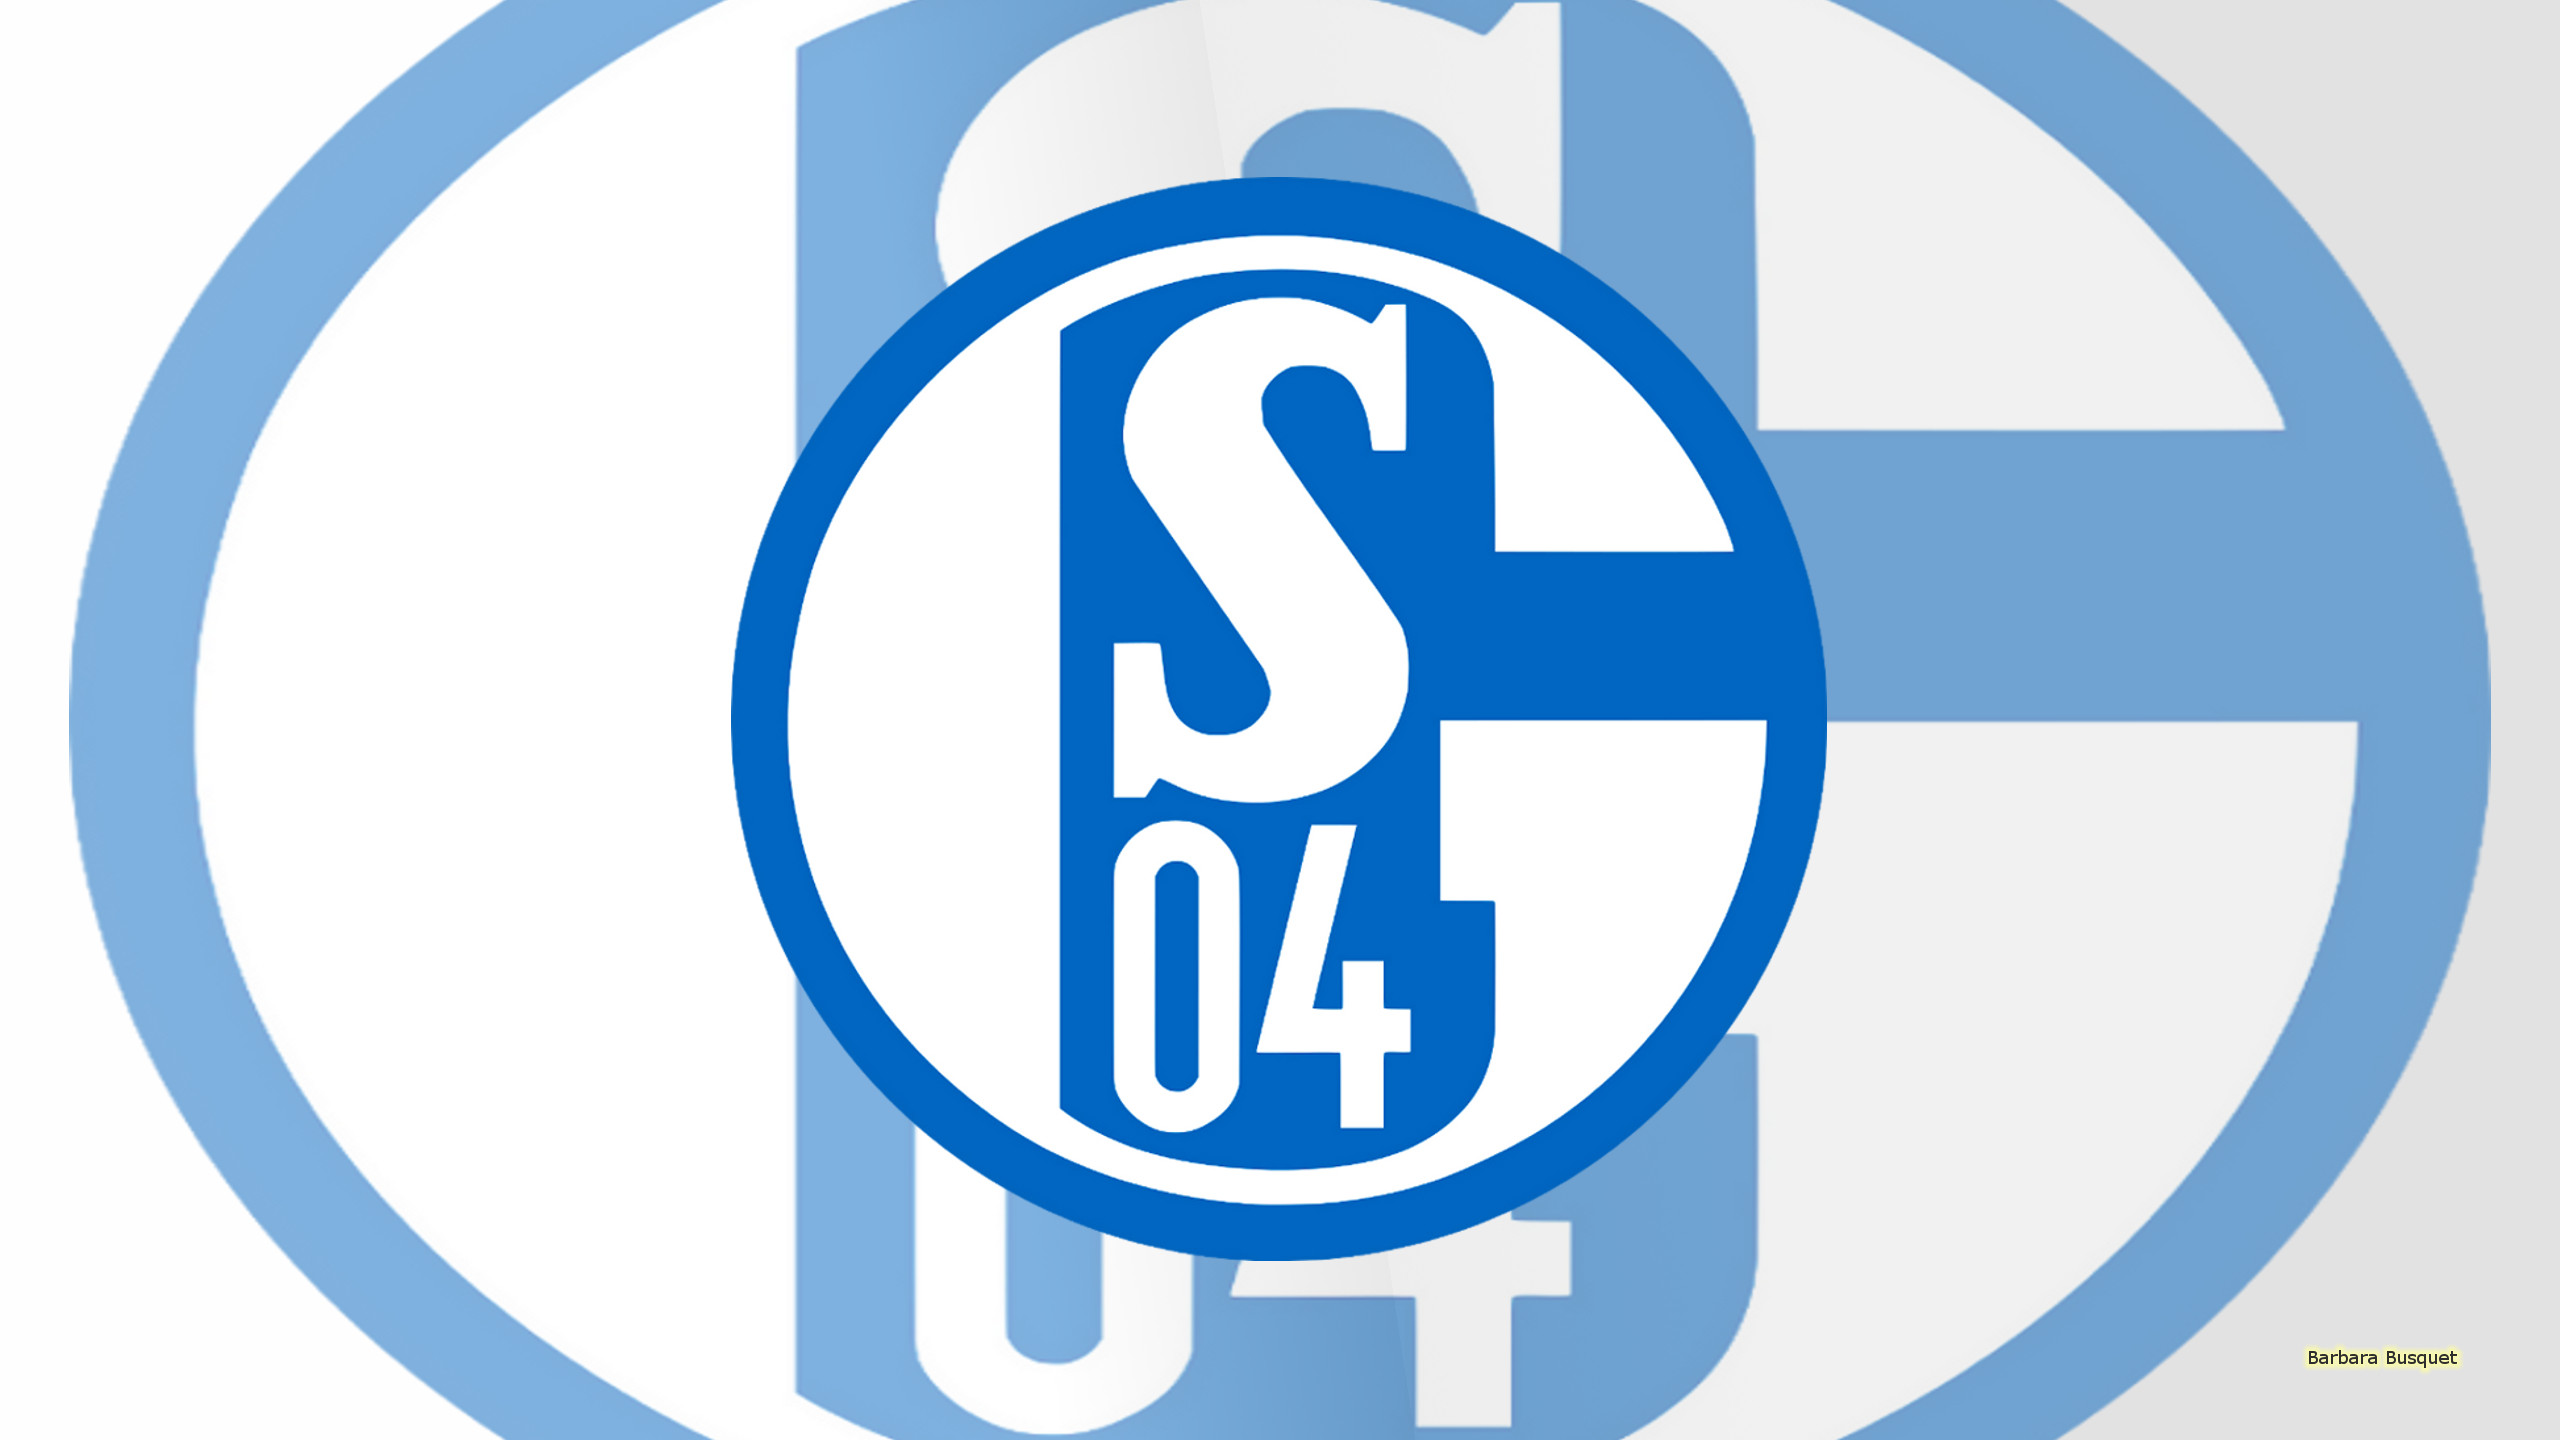 Sports FC Schalke 04 HD Wallpaper | Background Image